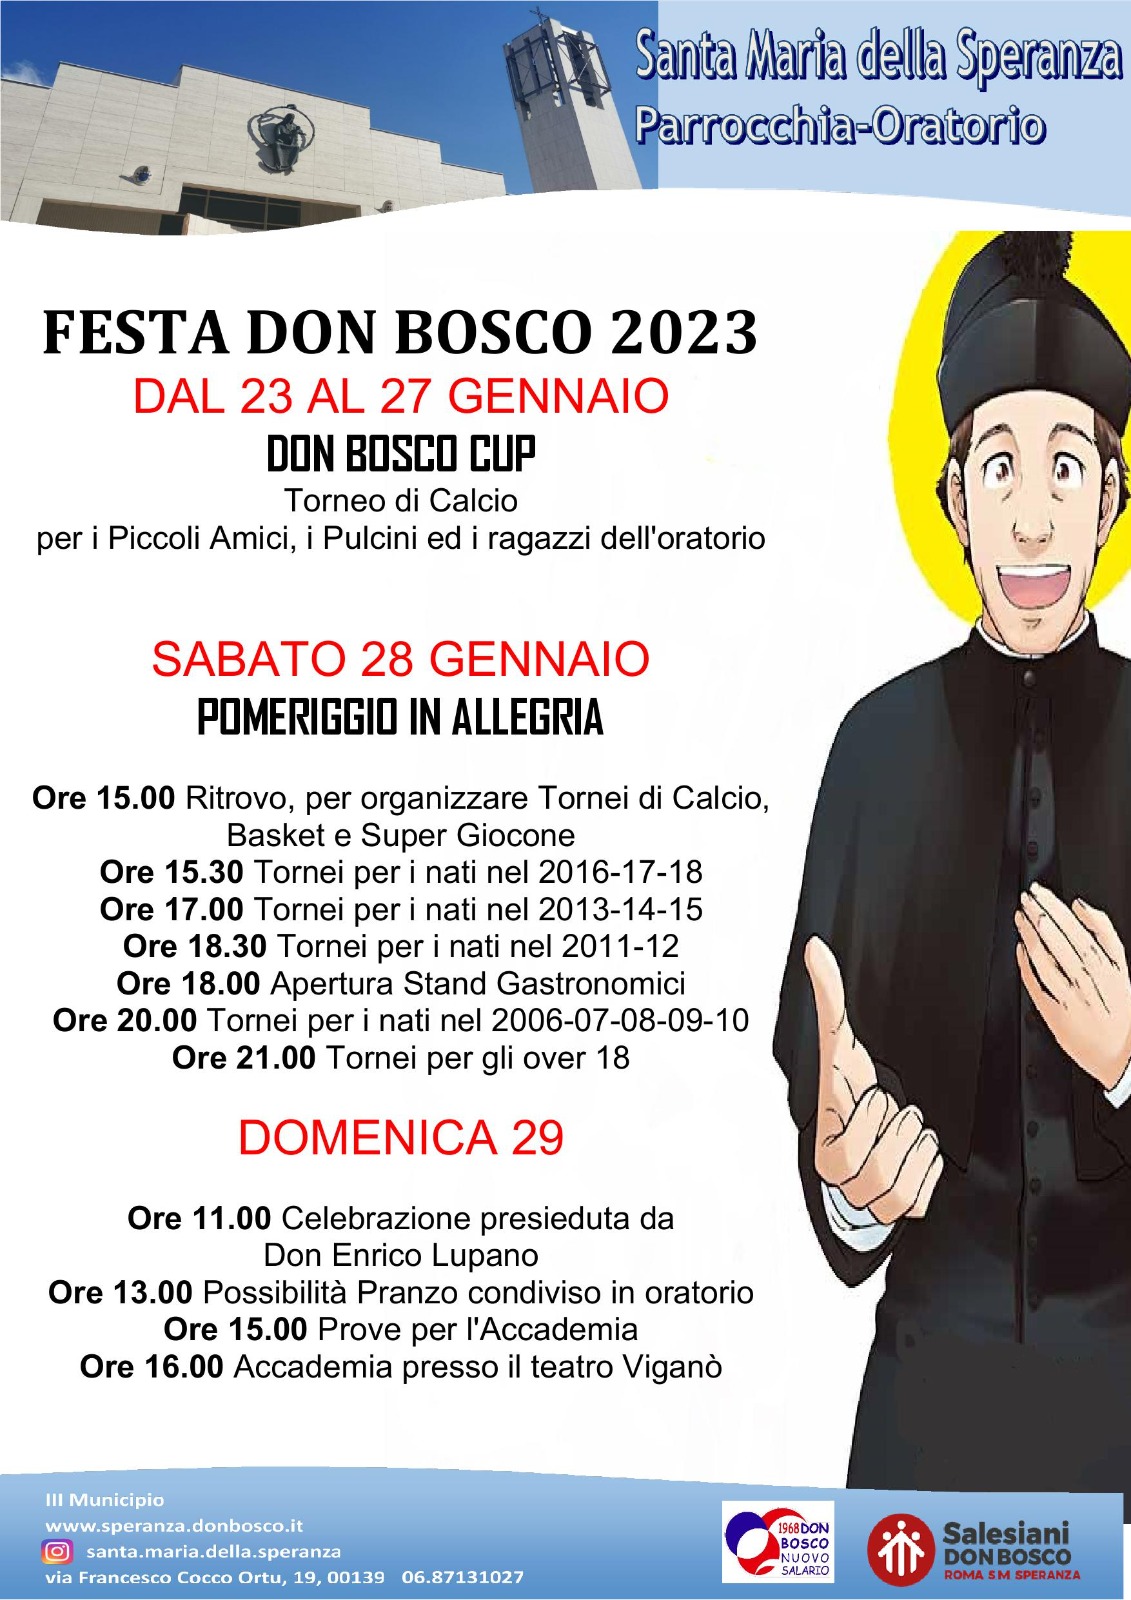 FESTA DON BOSCO ORATORIO 2023